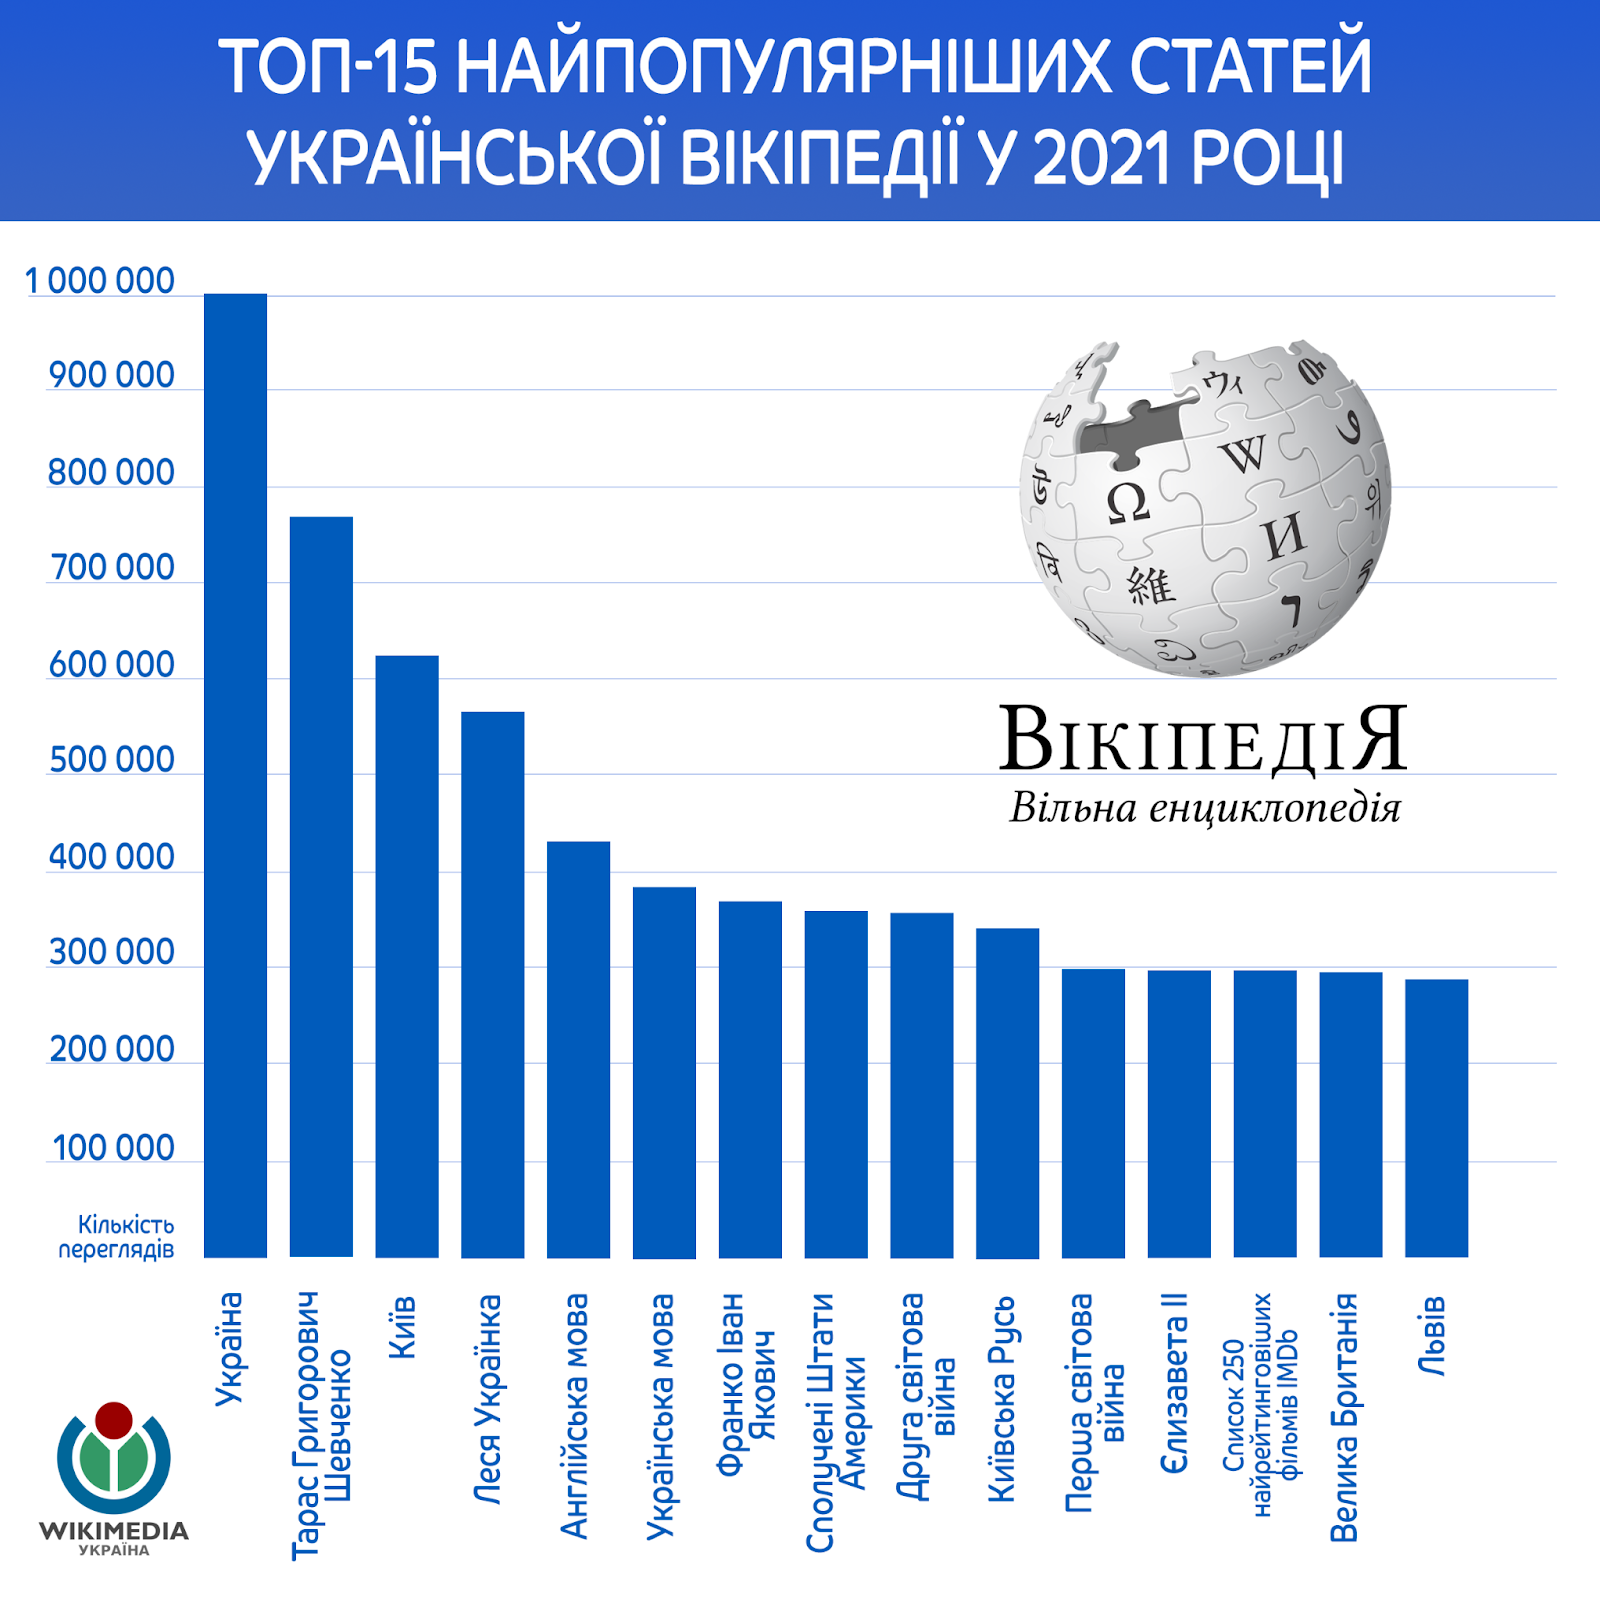 Леся Украинка и английский язык: топ-10 статей украинской Википедии в 2021 году 5